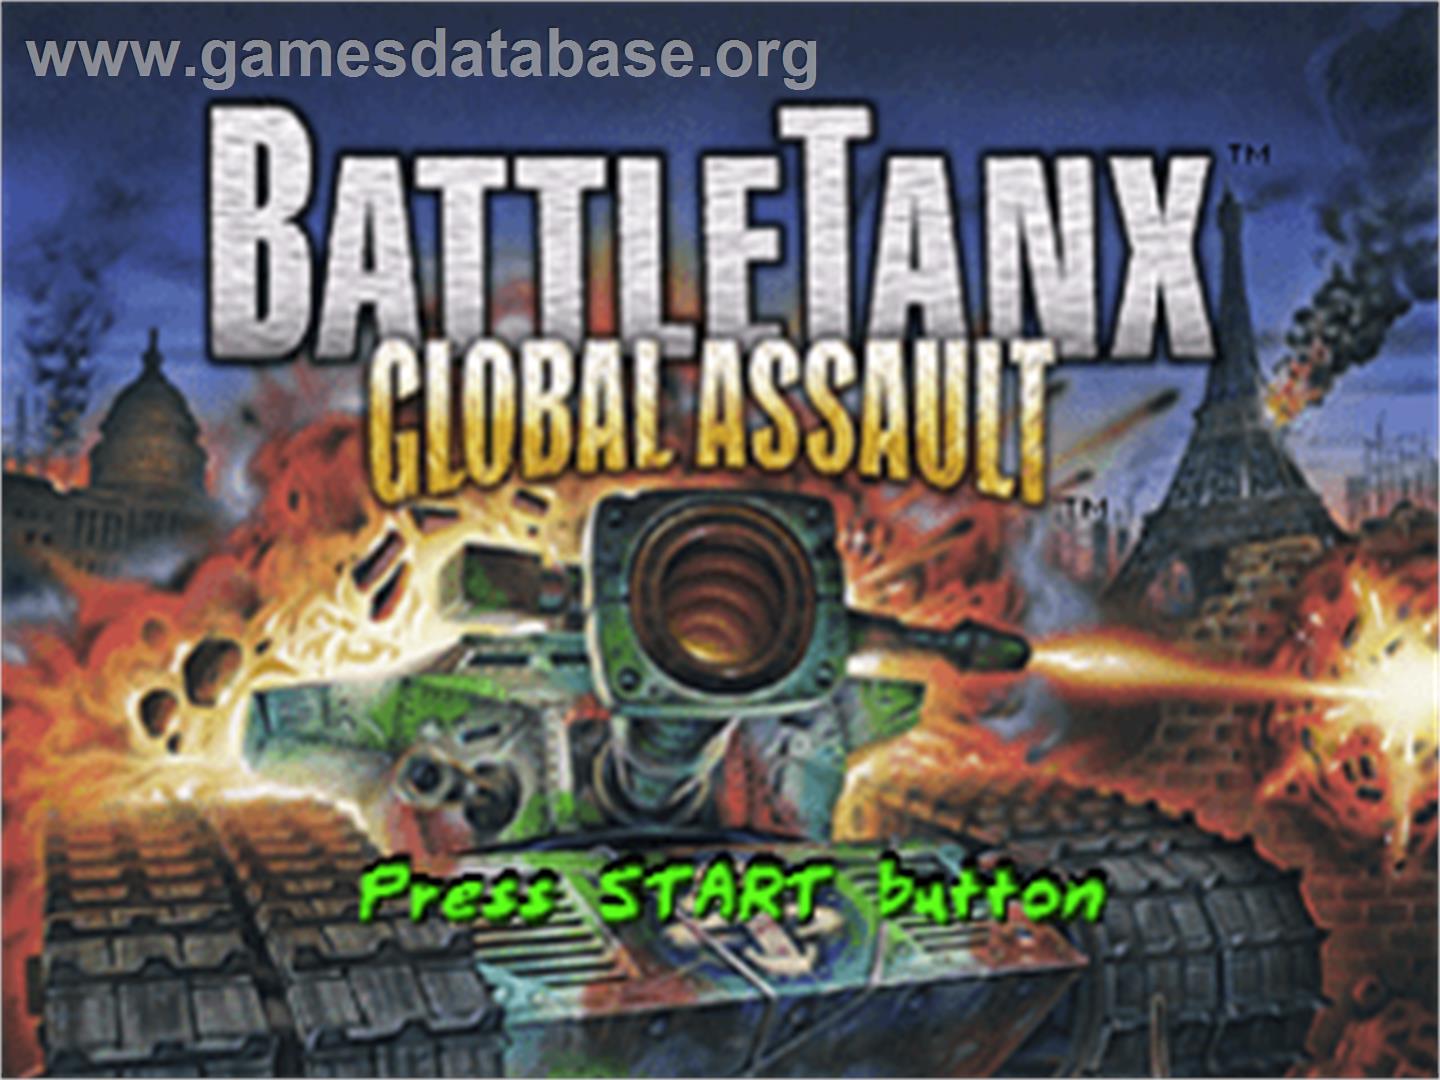 BattleTanx: Global Assault - Sony Playstation - Artwork - Title Screen